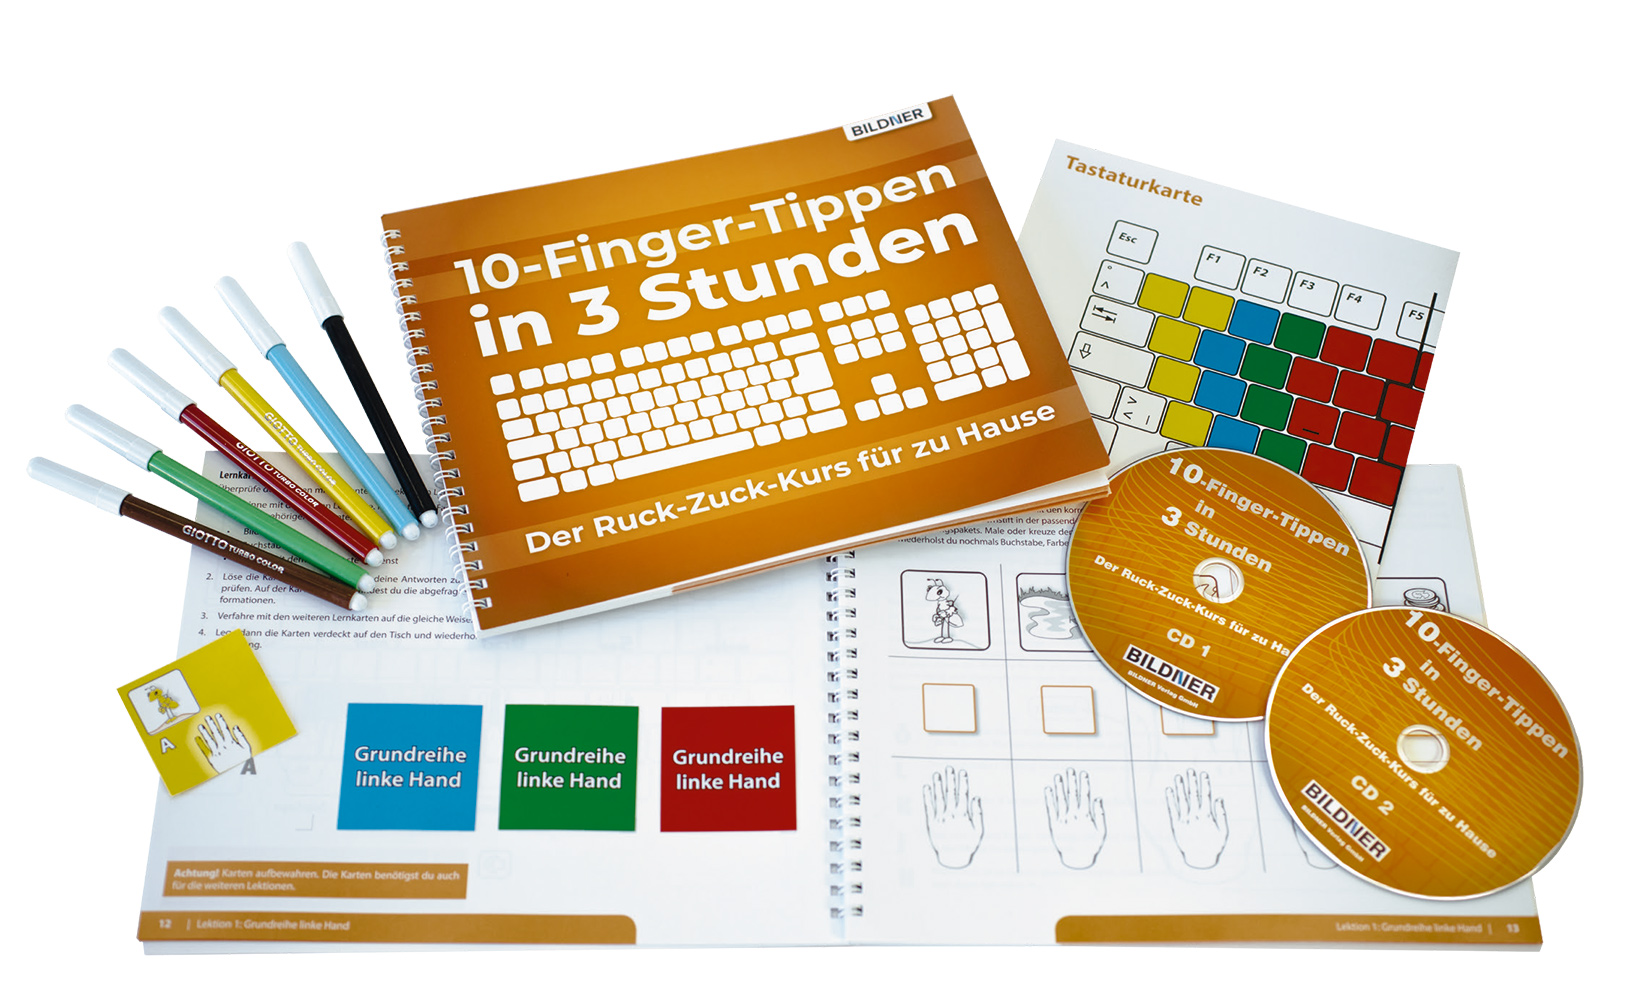 10 Finger tippen in 3 Stunden Der RuckZuckKurs für zu Hause PDF
Epub-Ebook